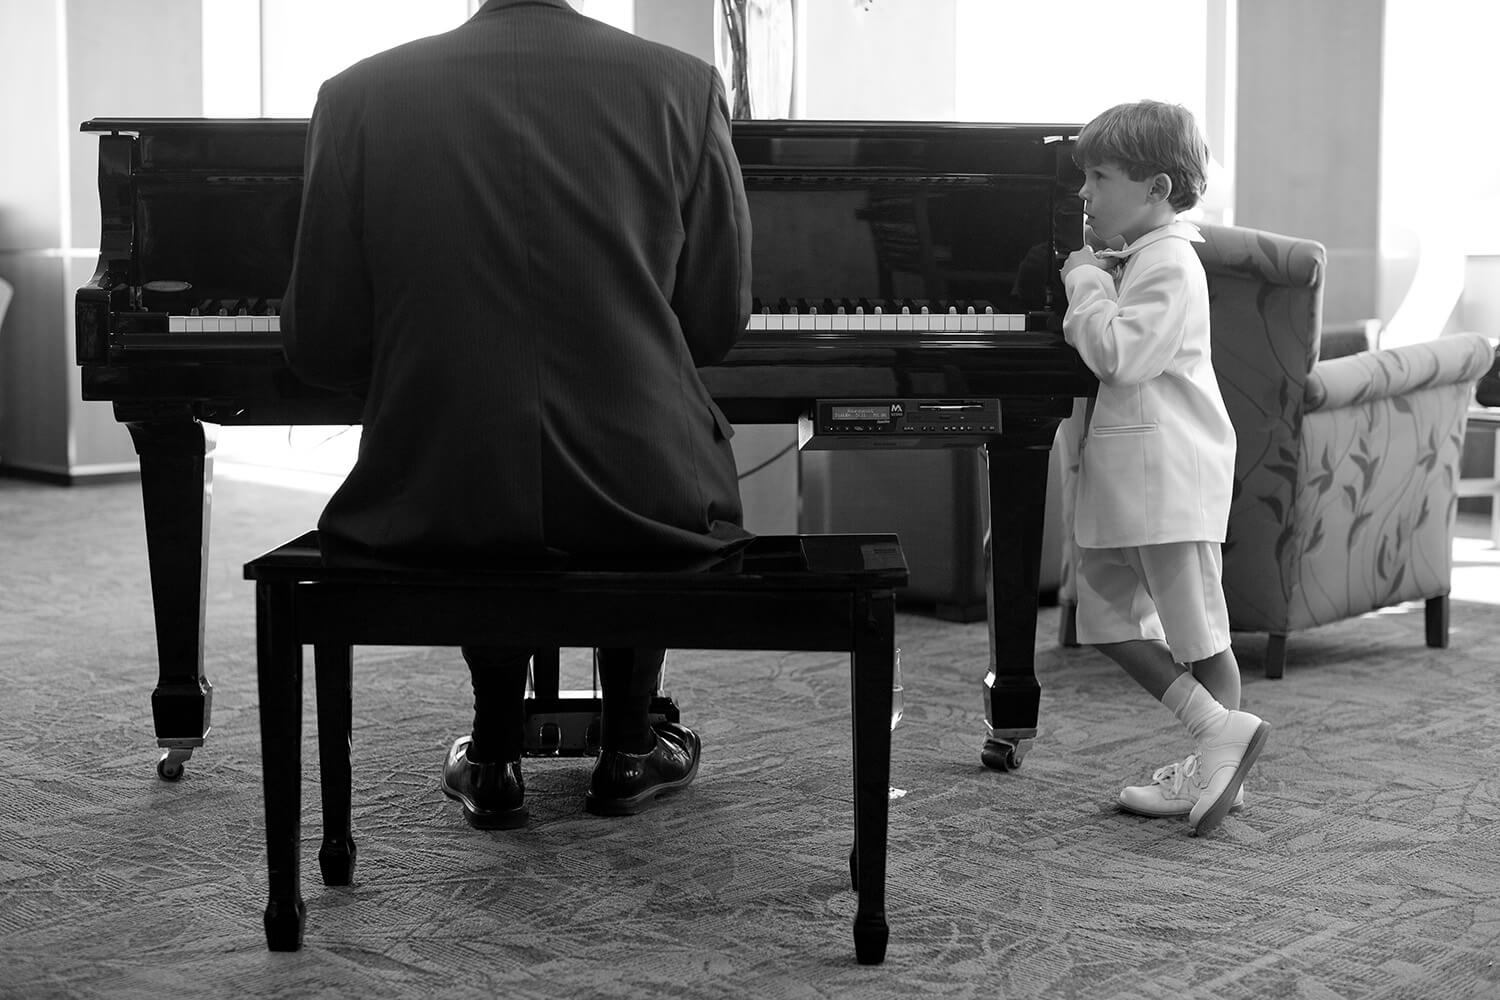 Wedding Music + Entertainment - Scott Graham Piano